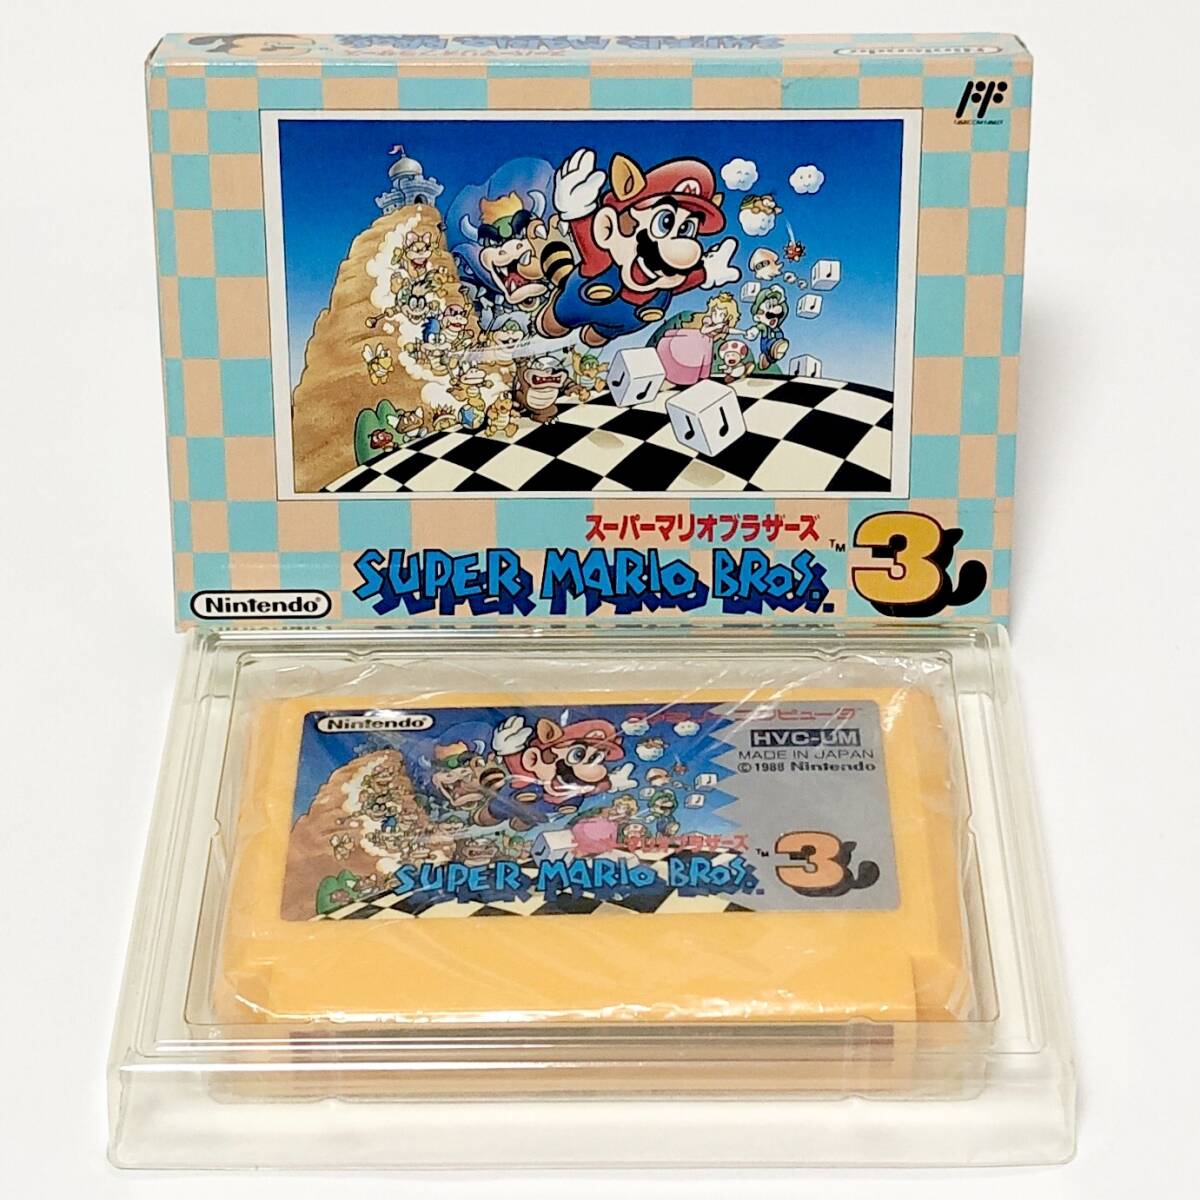 ファミコン スーパーマリオブラザーズ3 箱説付き 痛みあり 任天堂 レトロゲーム Nintendo Famicom Super Mario Bros. 3 CIB Tested